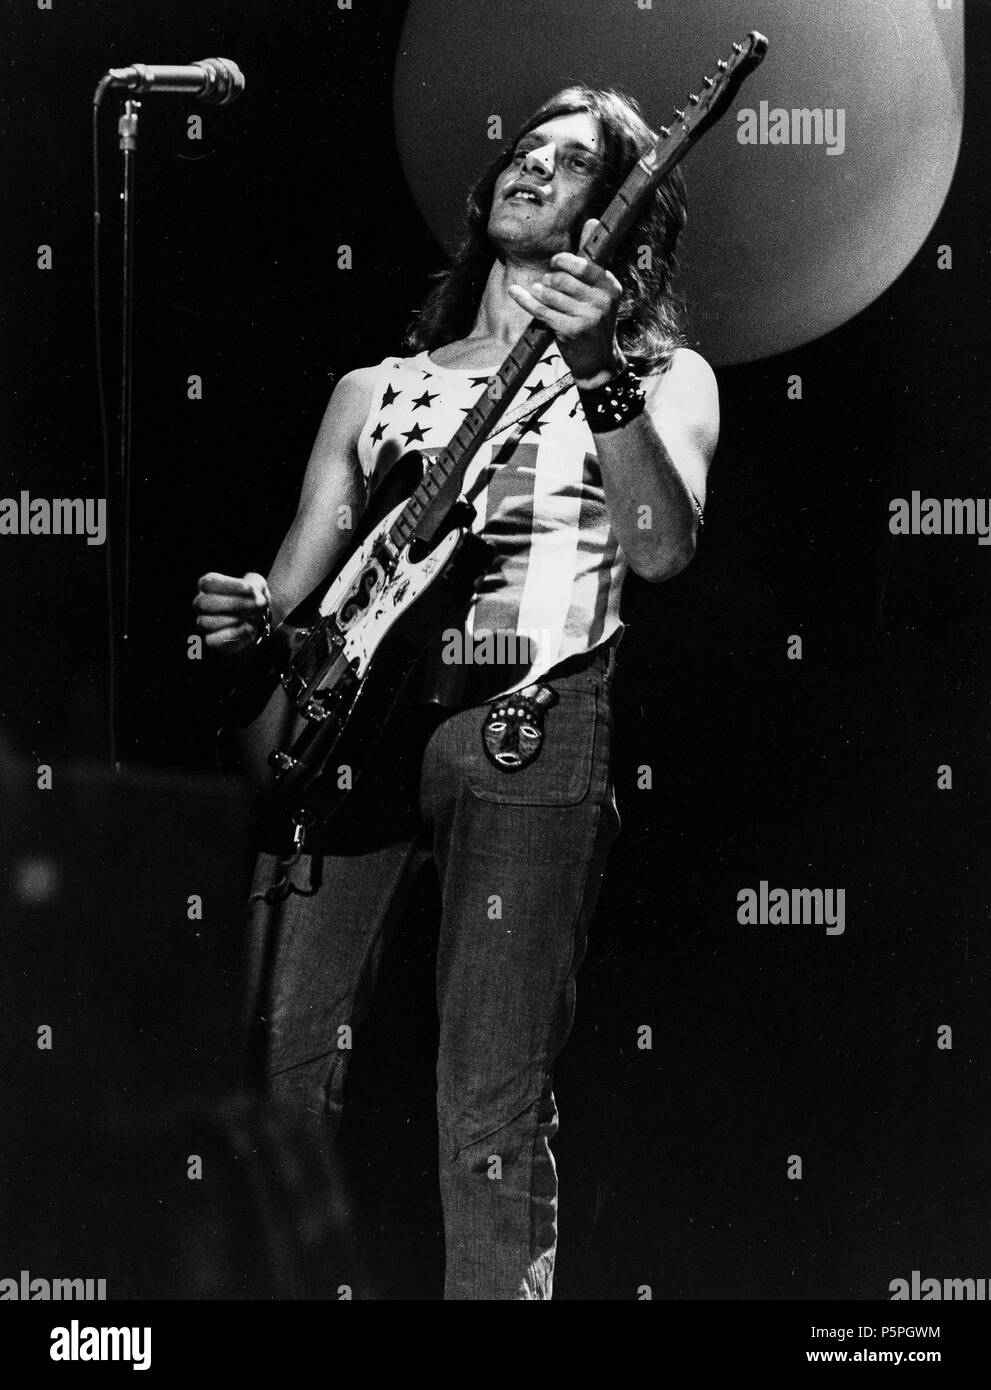 alan jones, blackfoot sue, top of the pop, 70s Stock Photo - Alamy